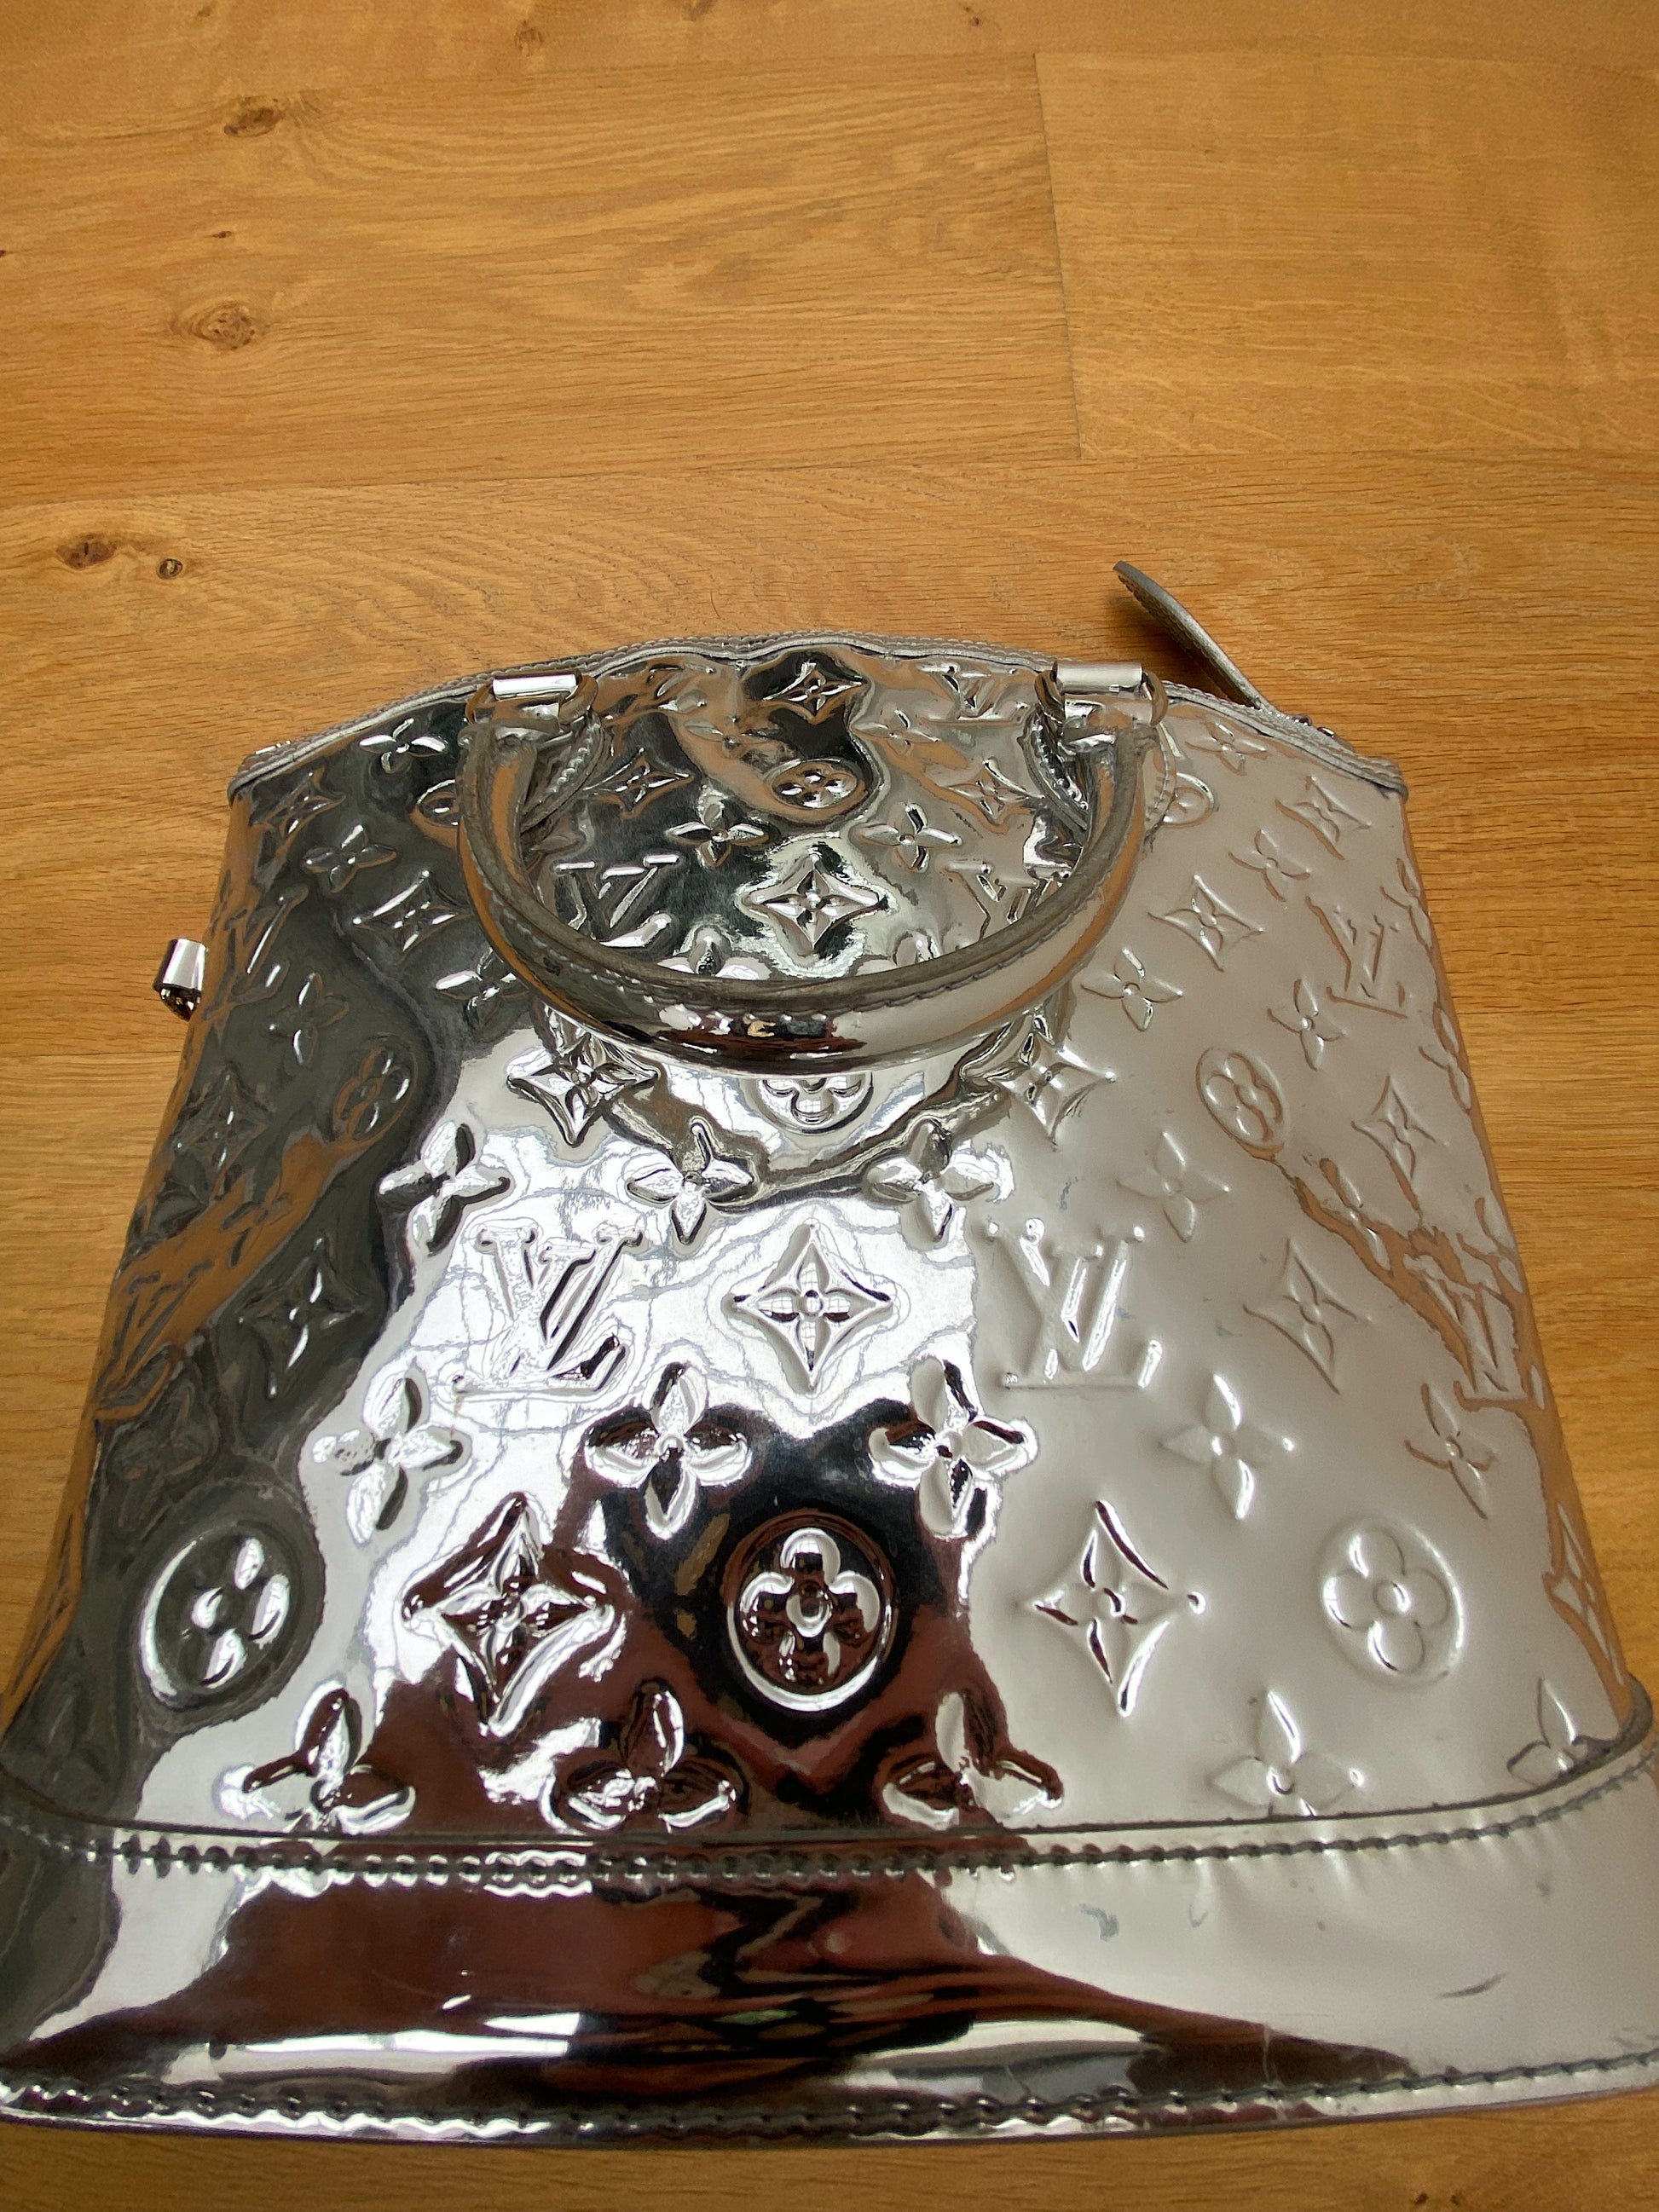 vuitton silver mirror bag